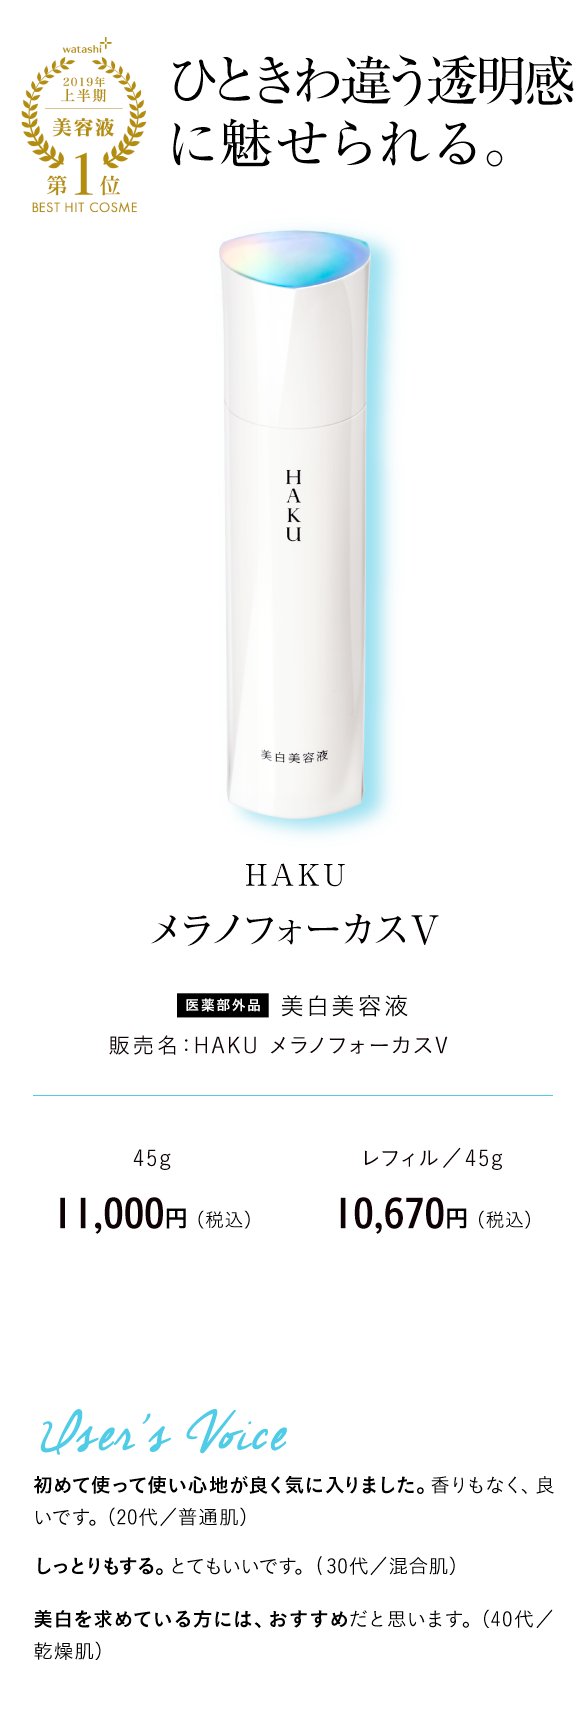 watashi+2019年上半期美容液第1位BEST HIT COSME ひときわ違う透明感に魅せられる。 HAKU メラノフォーカスV 医薬部外品 美白美容液 販売名：HAKU メラノフォーカスV 45g　11,000円 （税込） レフィル／45g 10,670円 （税込）User's Voice 初めて使って使い心地が良く気に入りました。香りもなく、良いです。（20代／普通肌）しっとりもする。とてもいいです。(30代／混合肌）美白を求めている方には、おすすめだと思います。（40代／乾燥肌）